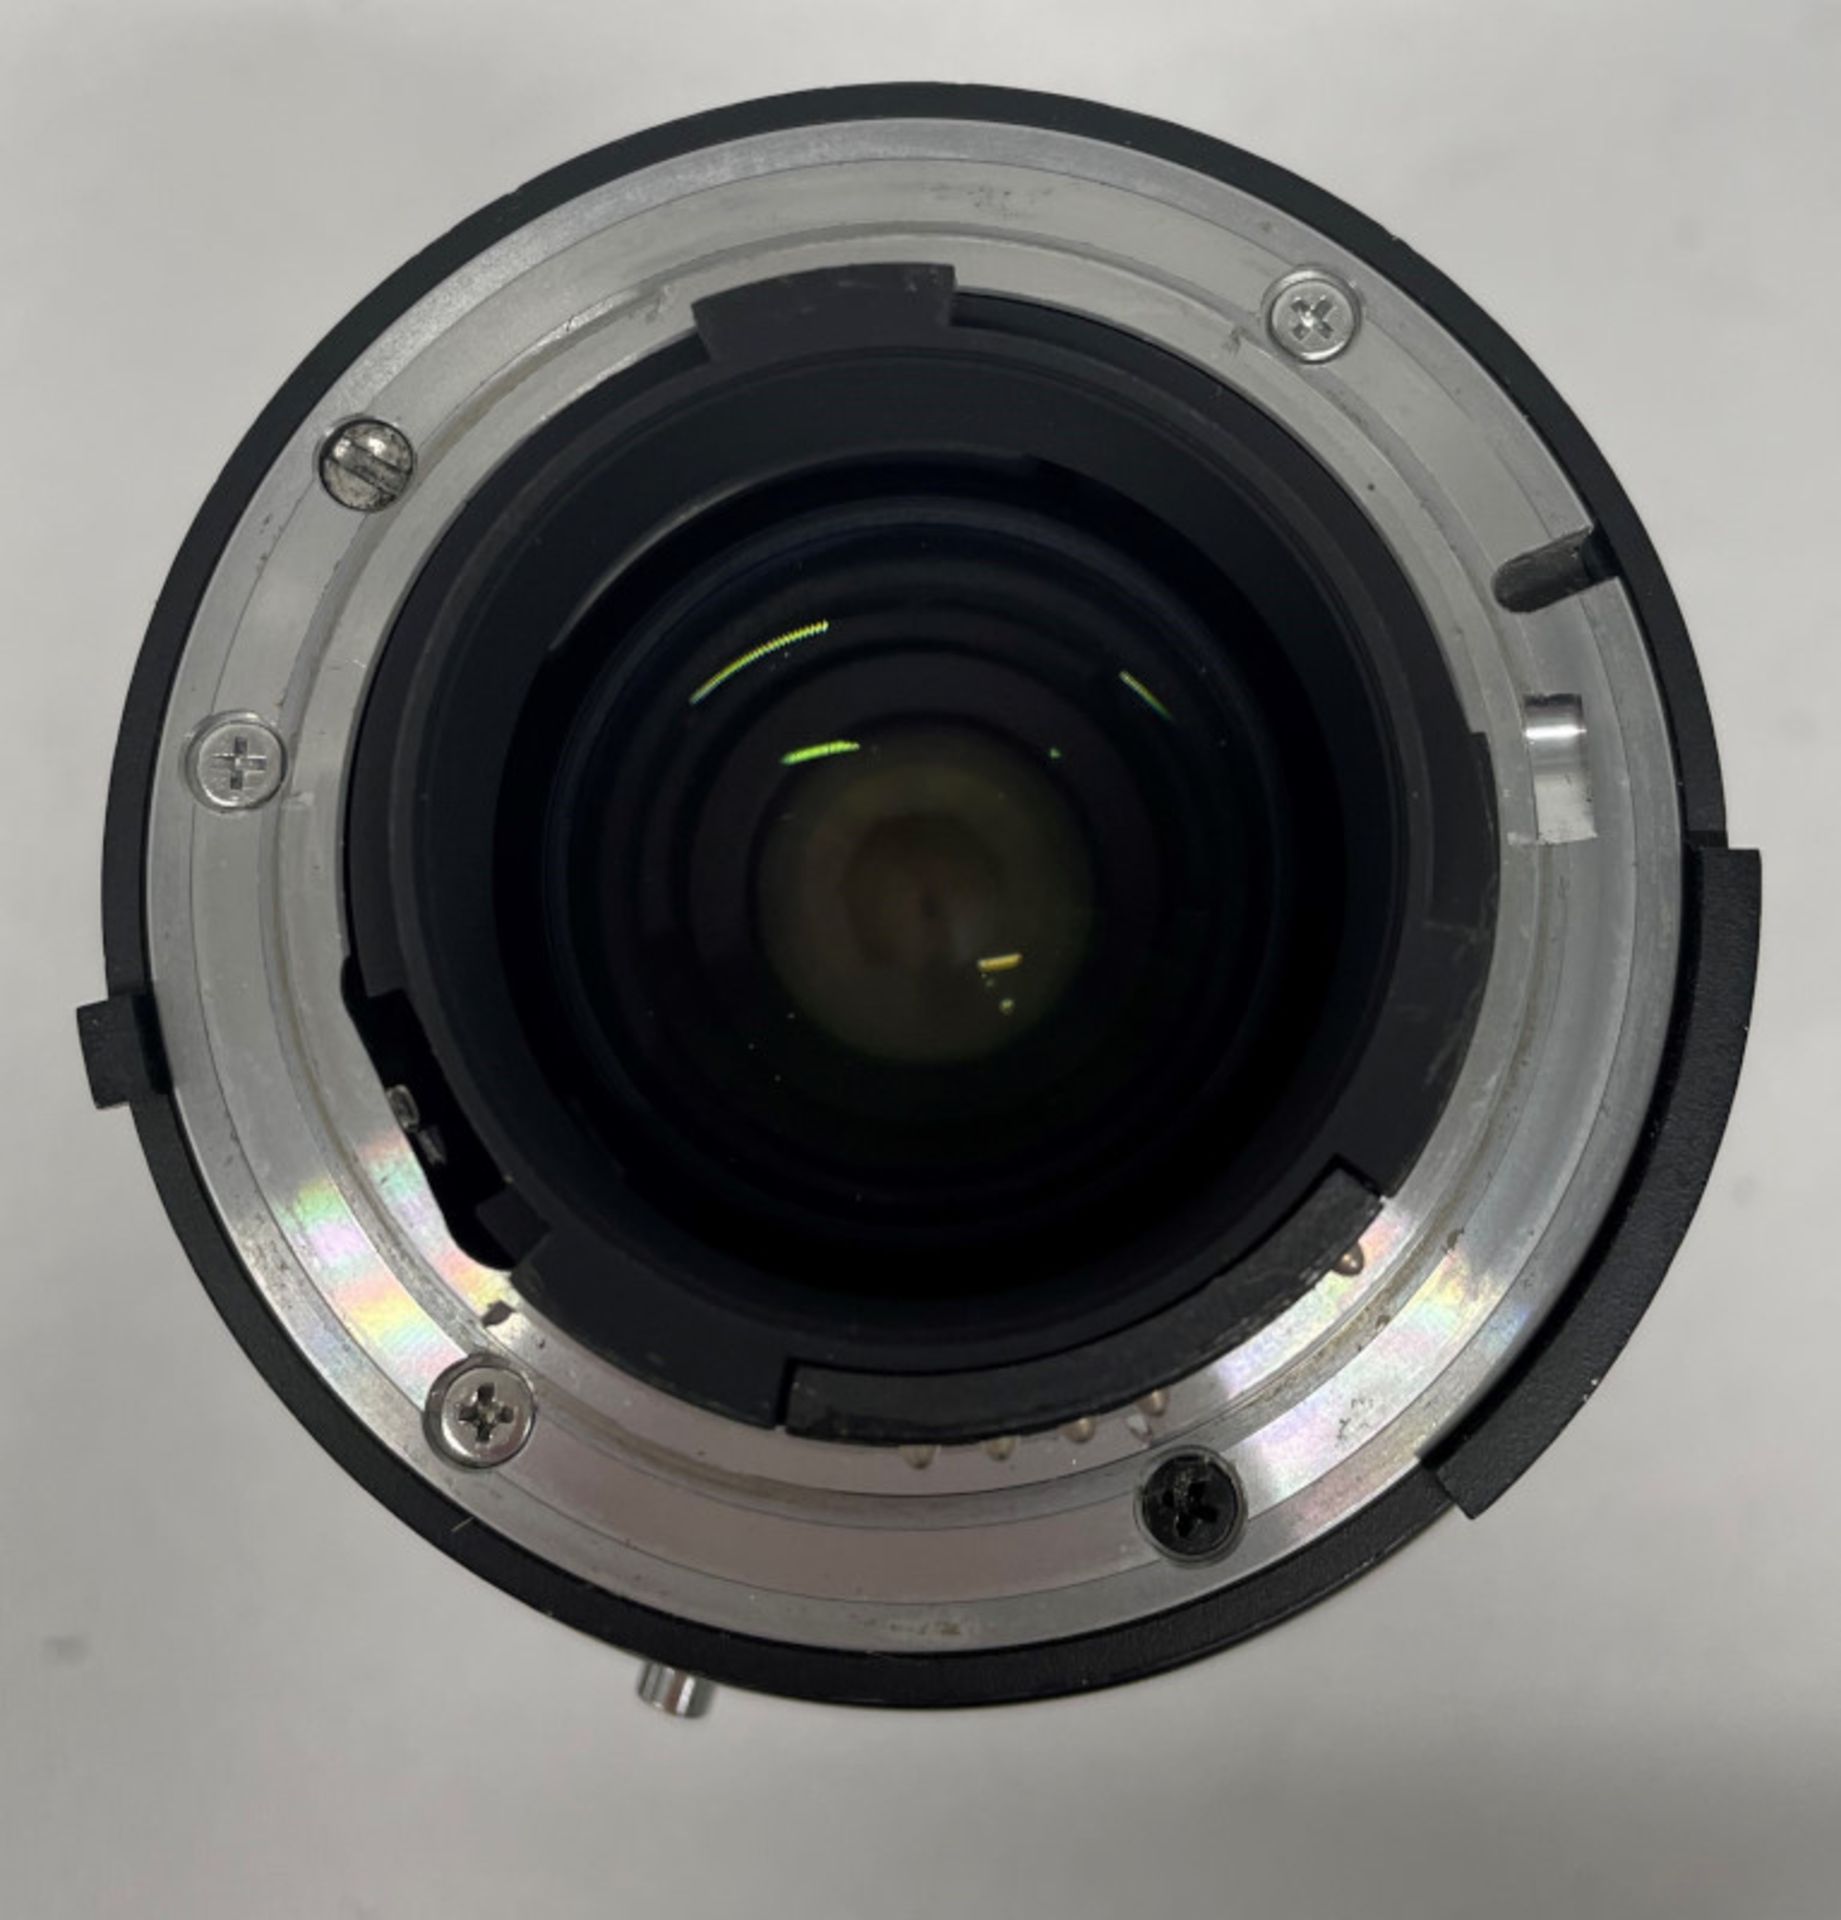 Nikon AF Nikkor 28-85mm - 1:3.5-4.5 Lens - Serial No. 3214498 with HOYA 62mm UV(O) Filter - Image 6 of 7